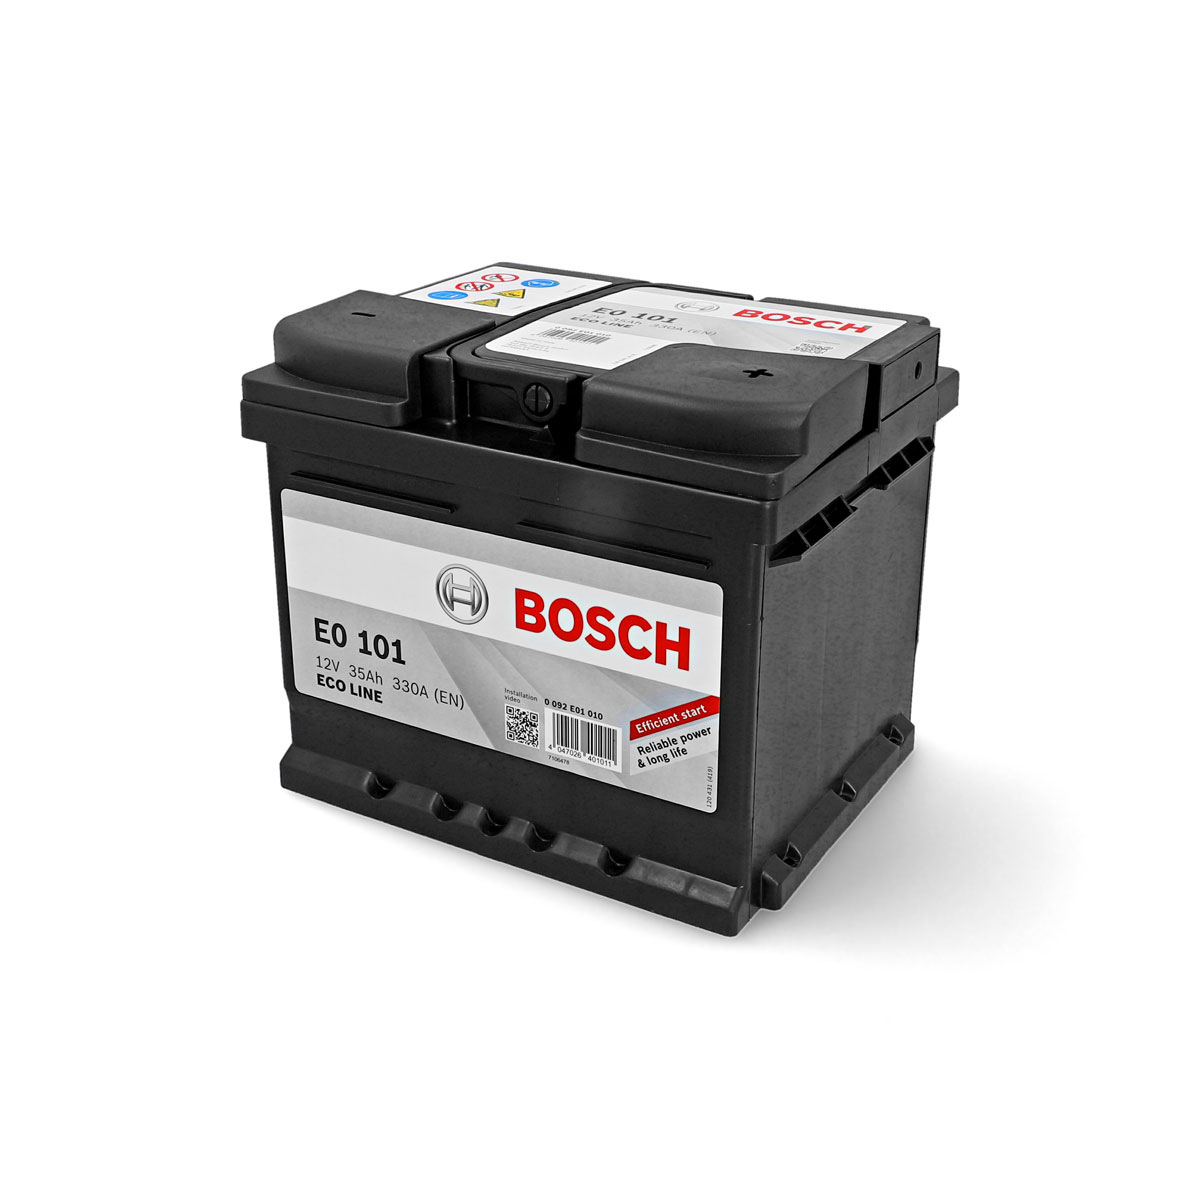 Autobatterien in Bielefeld - Bosch Autobatterien